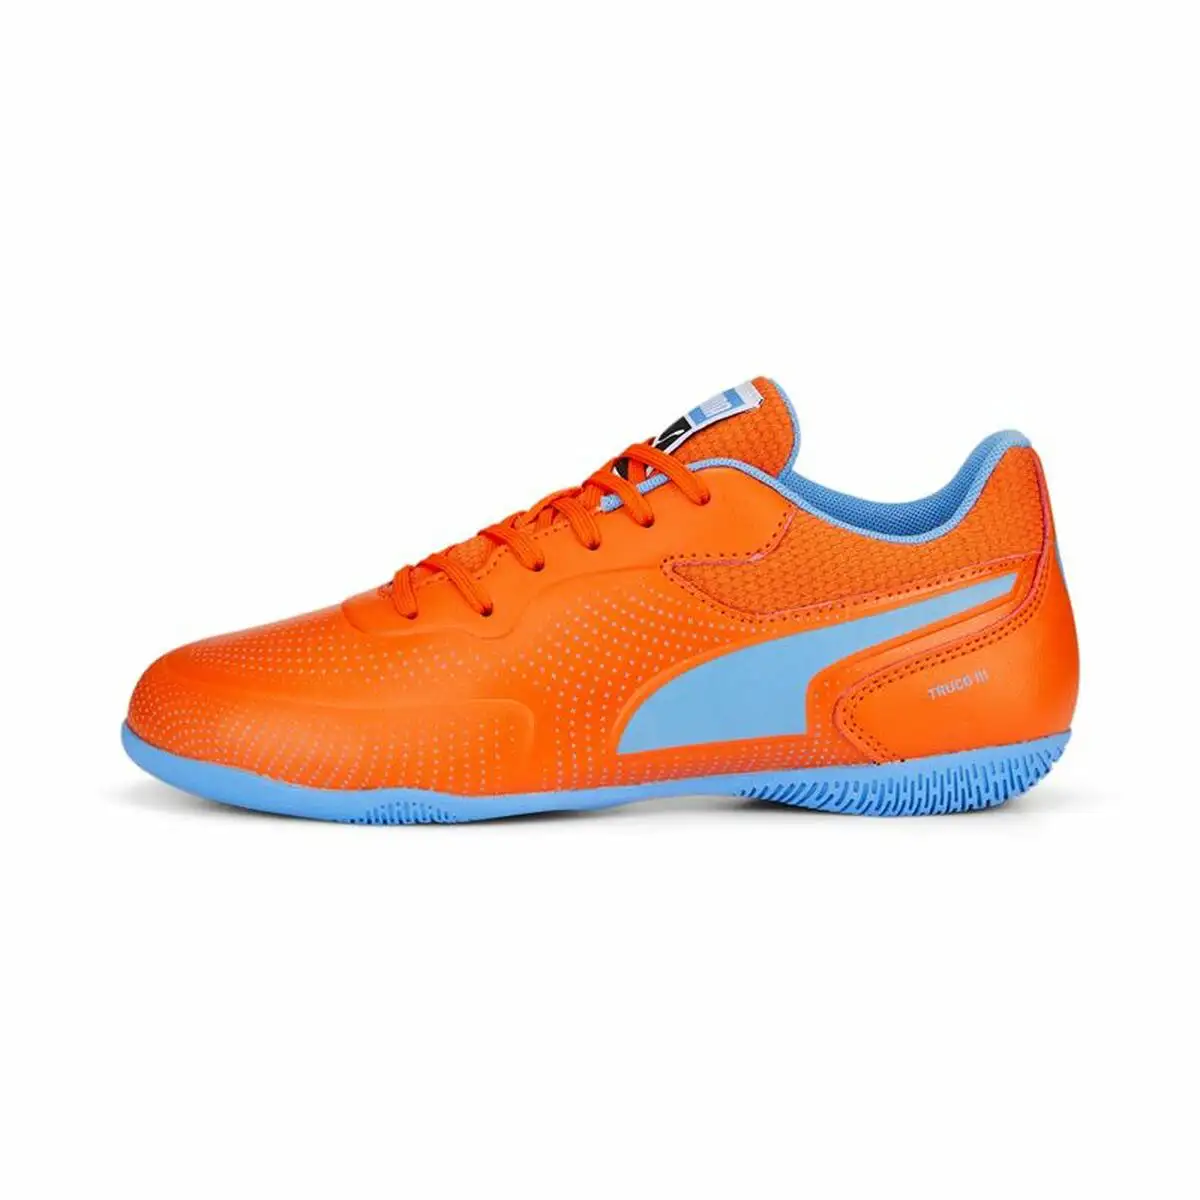 Chaussures de futsal pour enfants puma truco iii orange homme_3234. DIAYTAR SENEGAL - Où Choisir Devient une Découverte. Explorez notre boutique en ligne et trouvez des articles qui vous surprennent et vous ravissent à chaque clic.